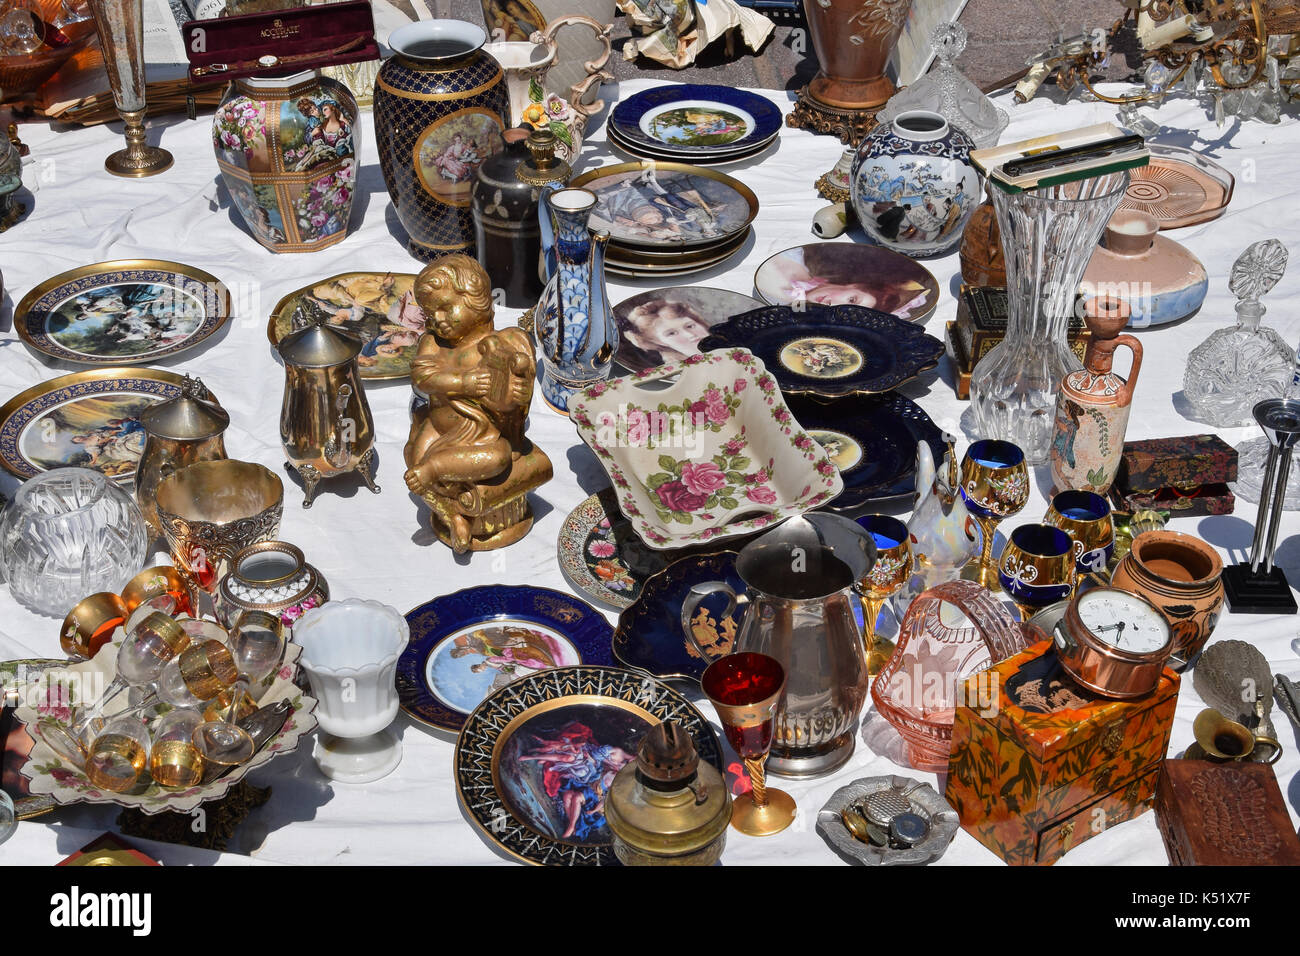 Athens, Grecia - 31 maggio 2015: vetro vintage oggetti decorativi antichi piatti di porcellana e vasi per la vendita al mercato delle pulci. Foto Stock